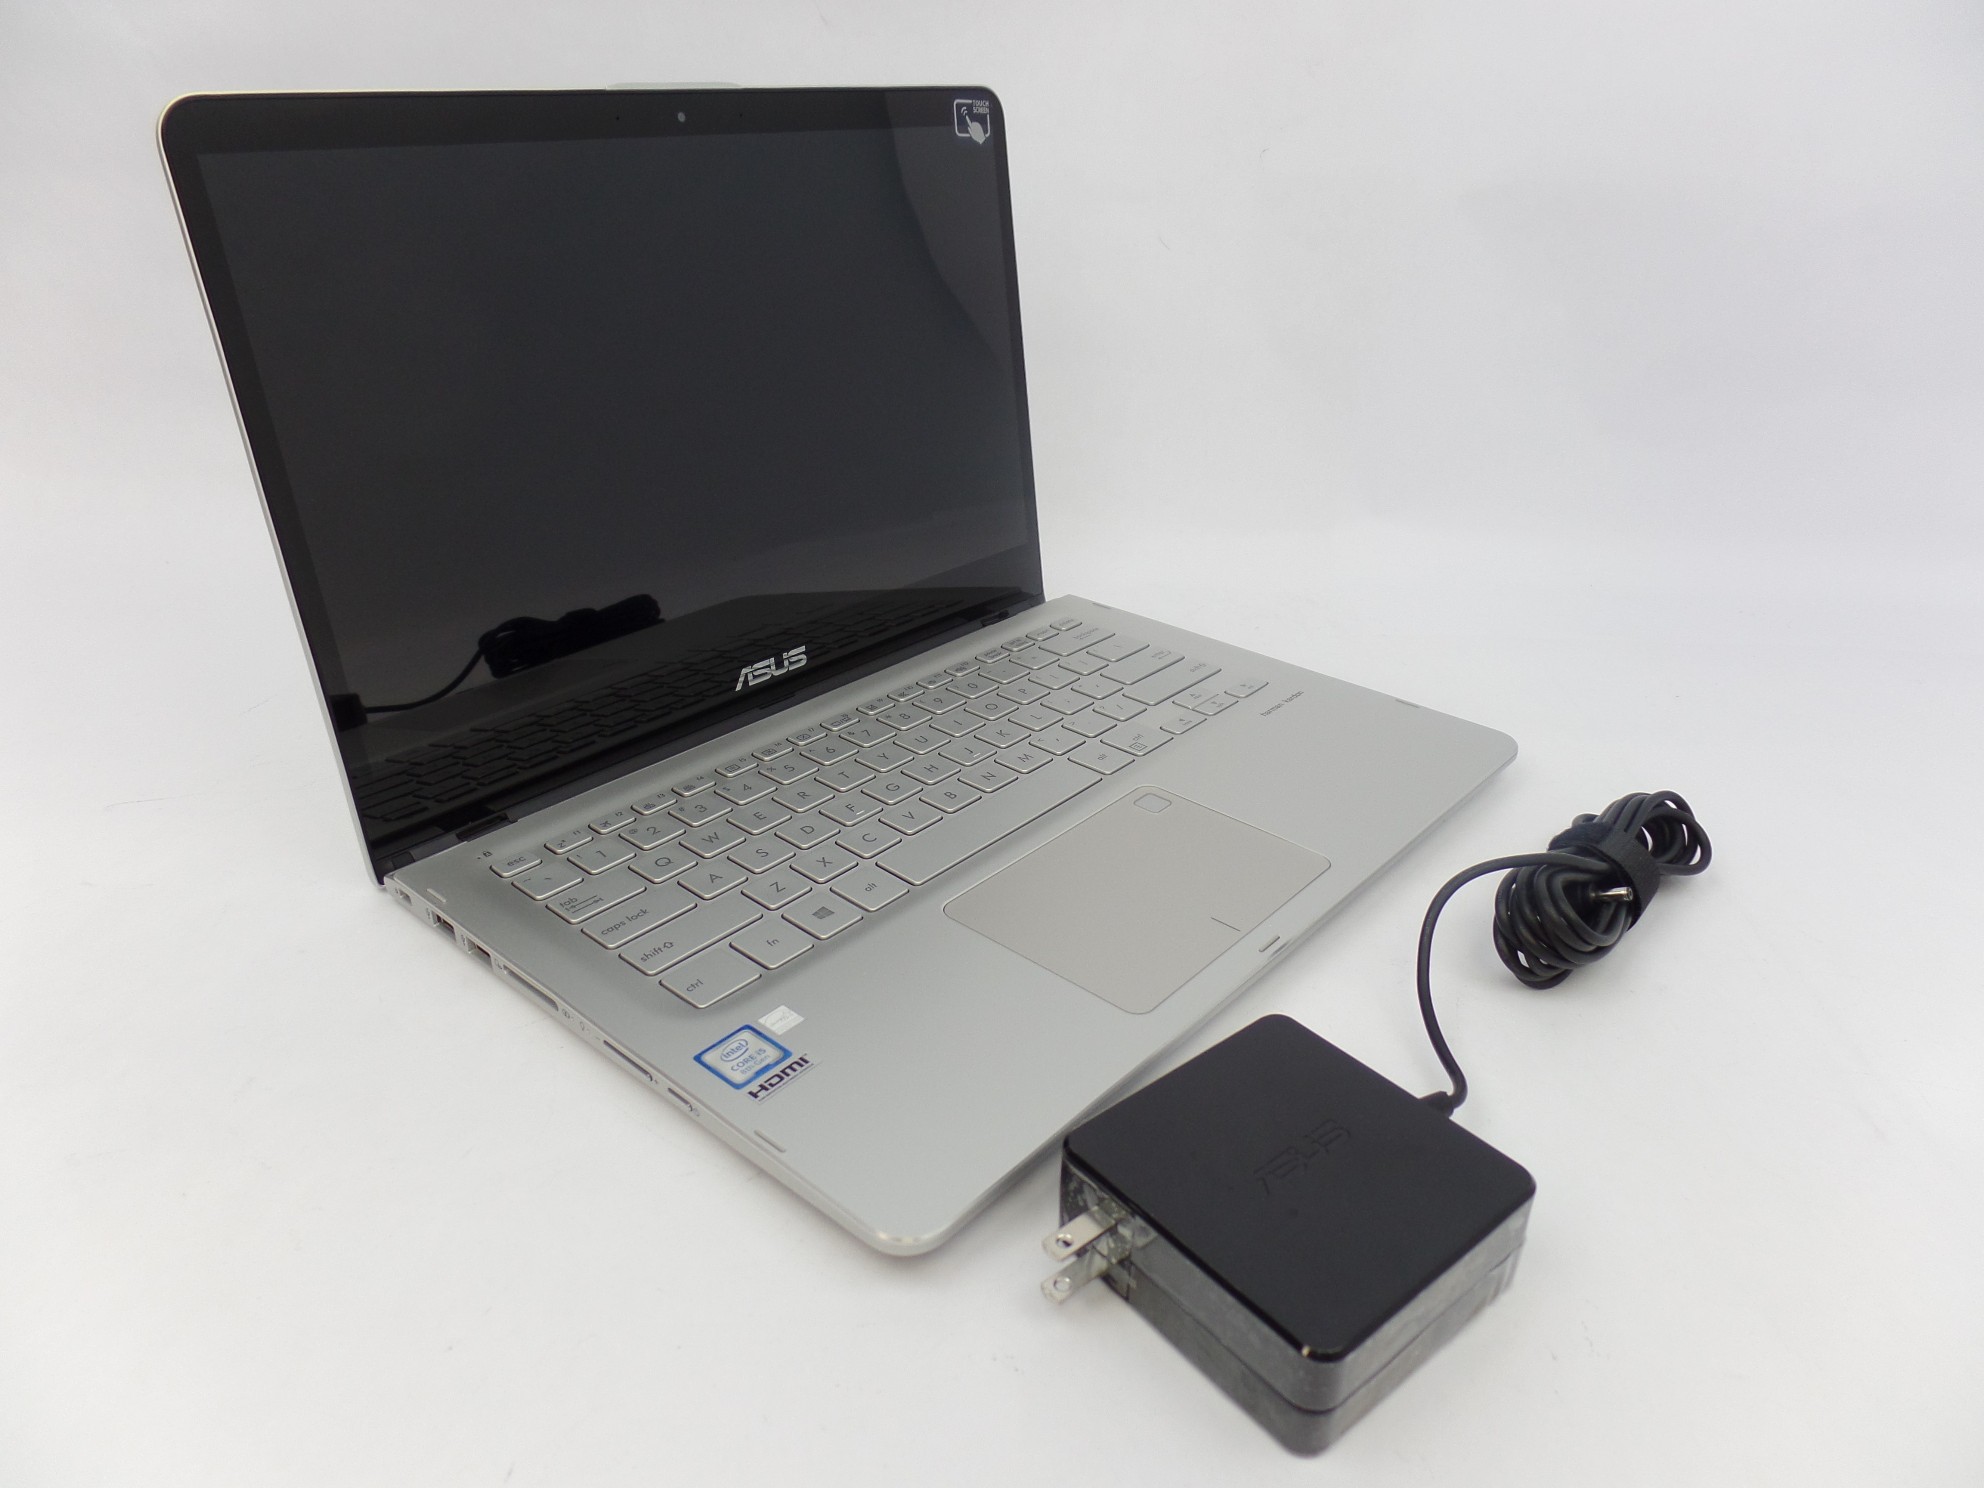 ASUS Q405UA-BI5T5 14" FHD Touch i5-8250U 1.6GHz 8GB 1TB HDD W10H Laptop SD